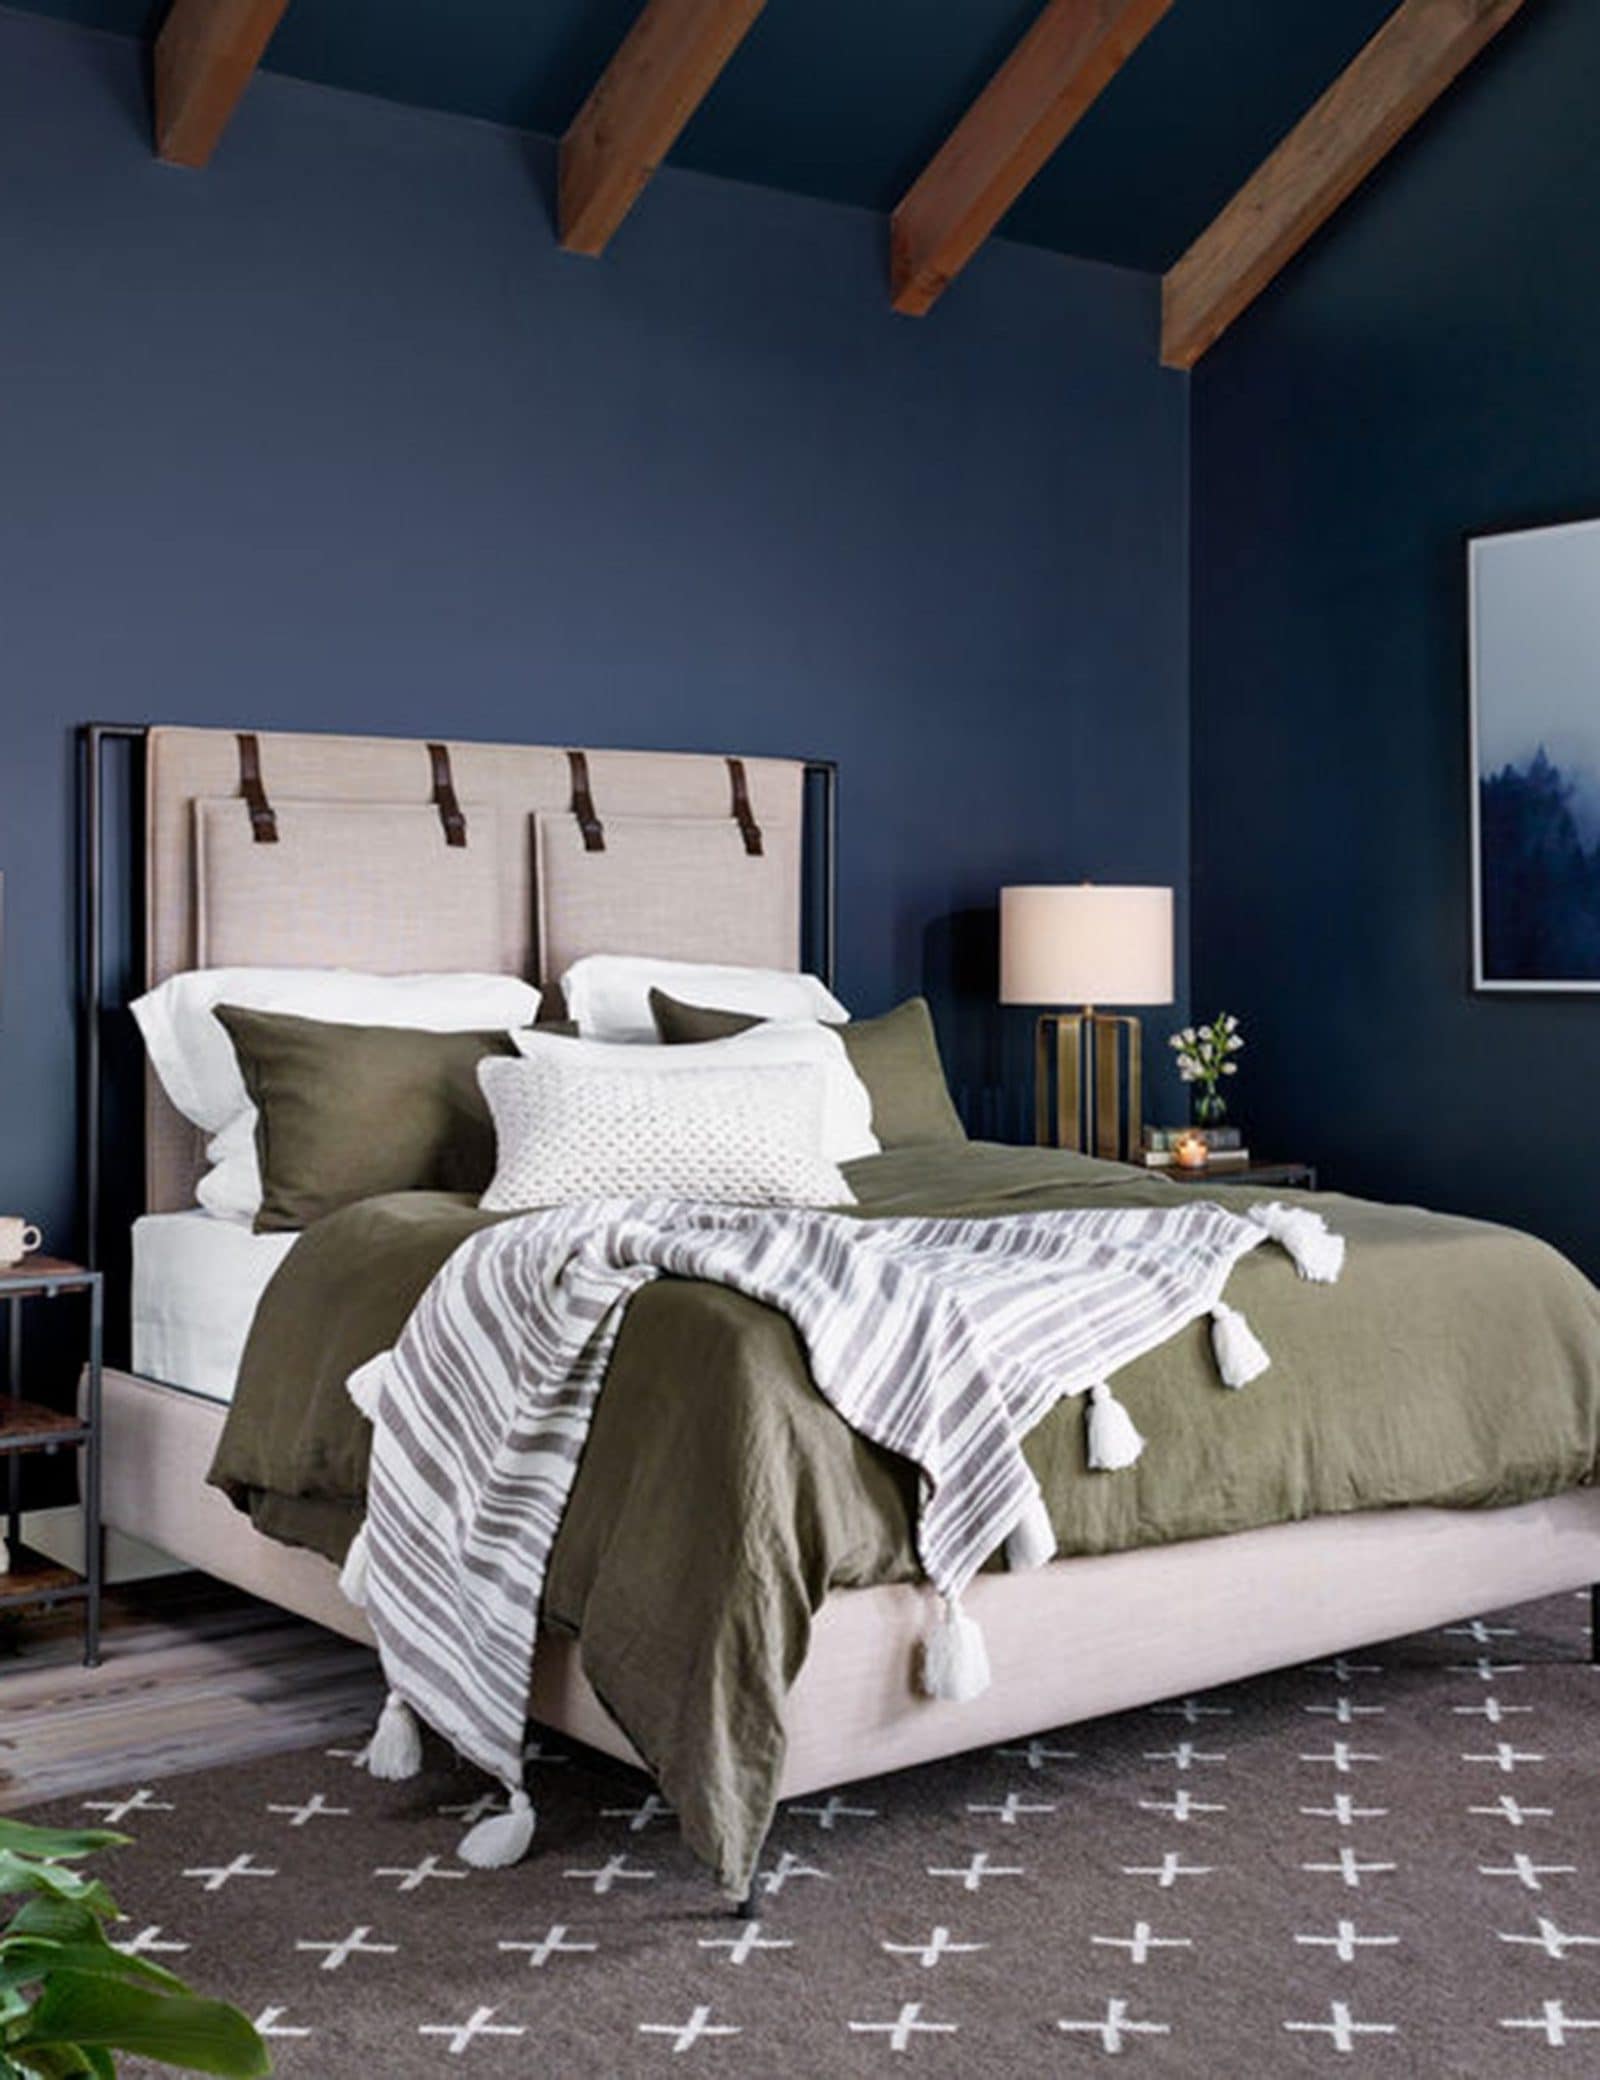 Cree interés visual presentando esta cama cubierta de lino